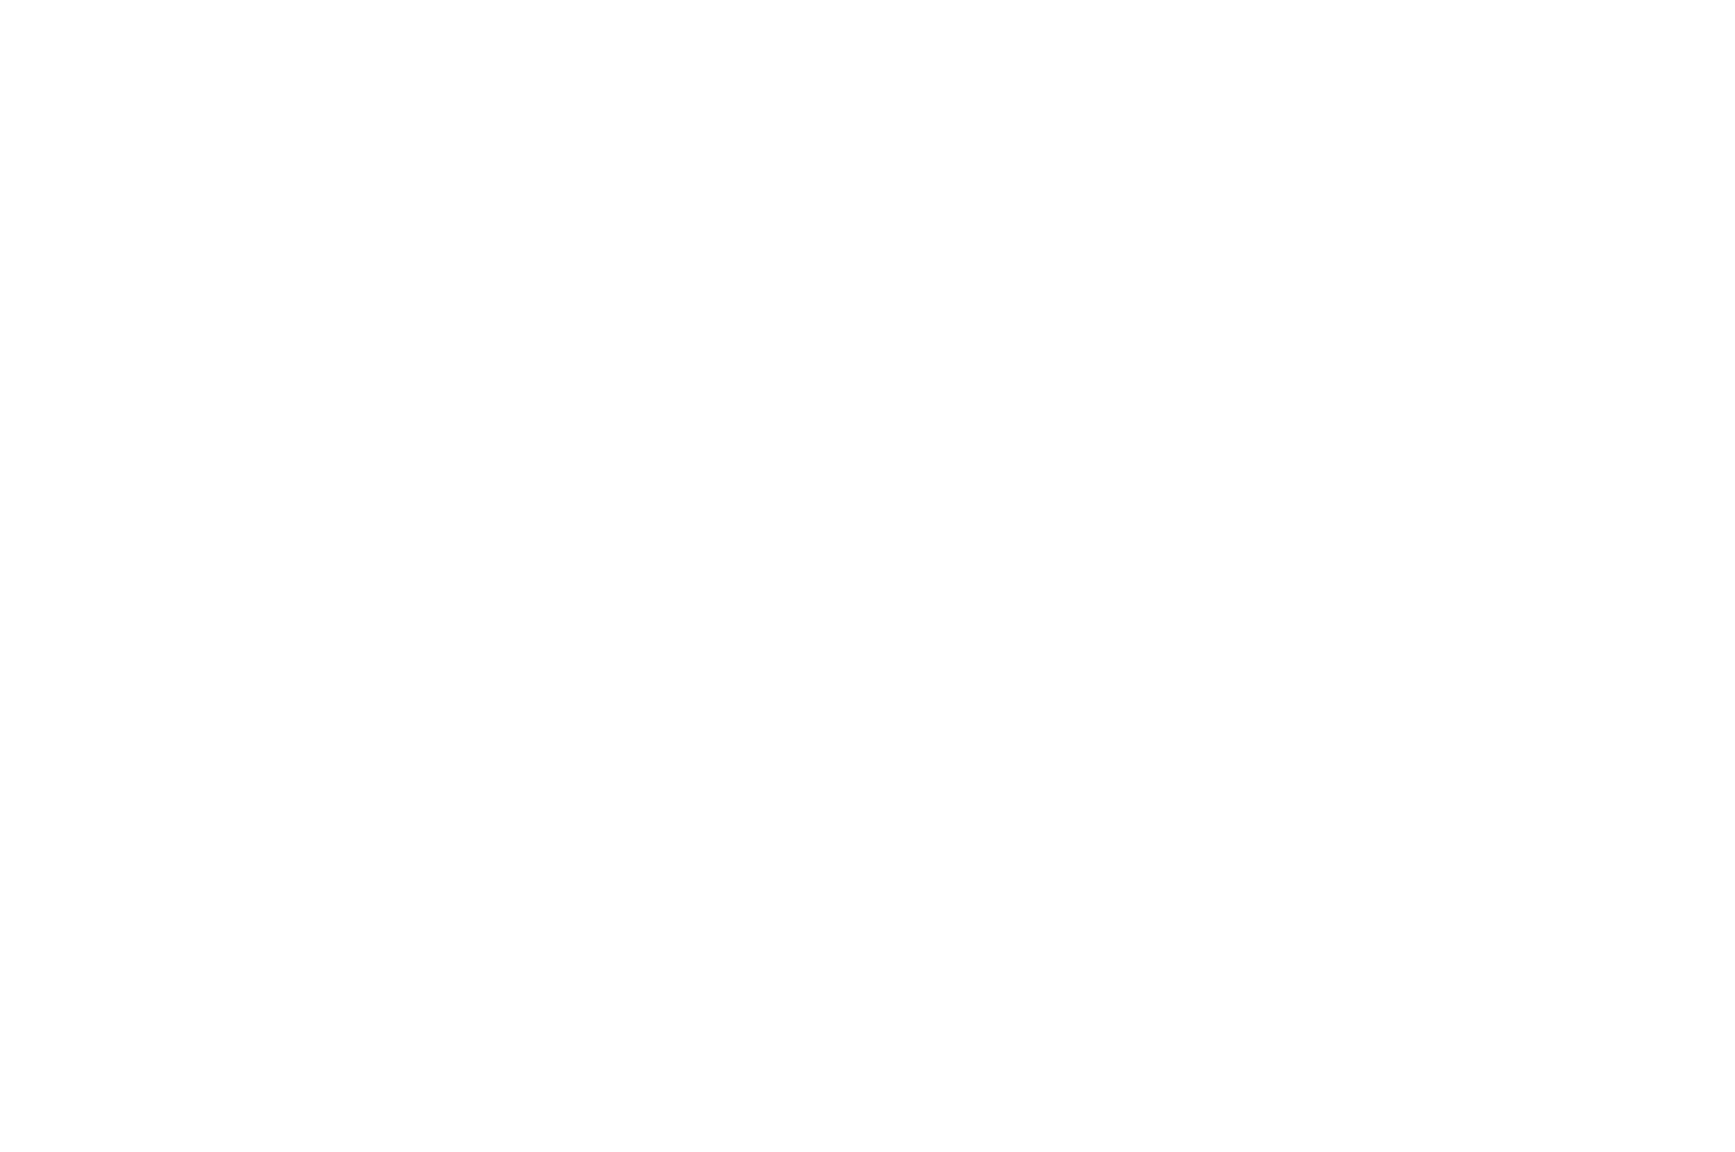 OFFICIAL SELECTION - Hobnobben Film Festival - 2020.png